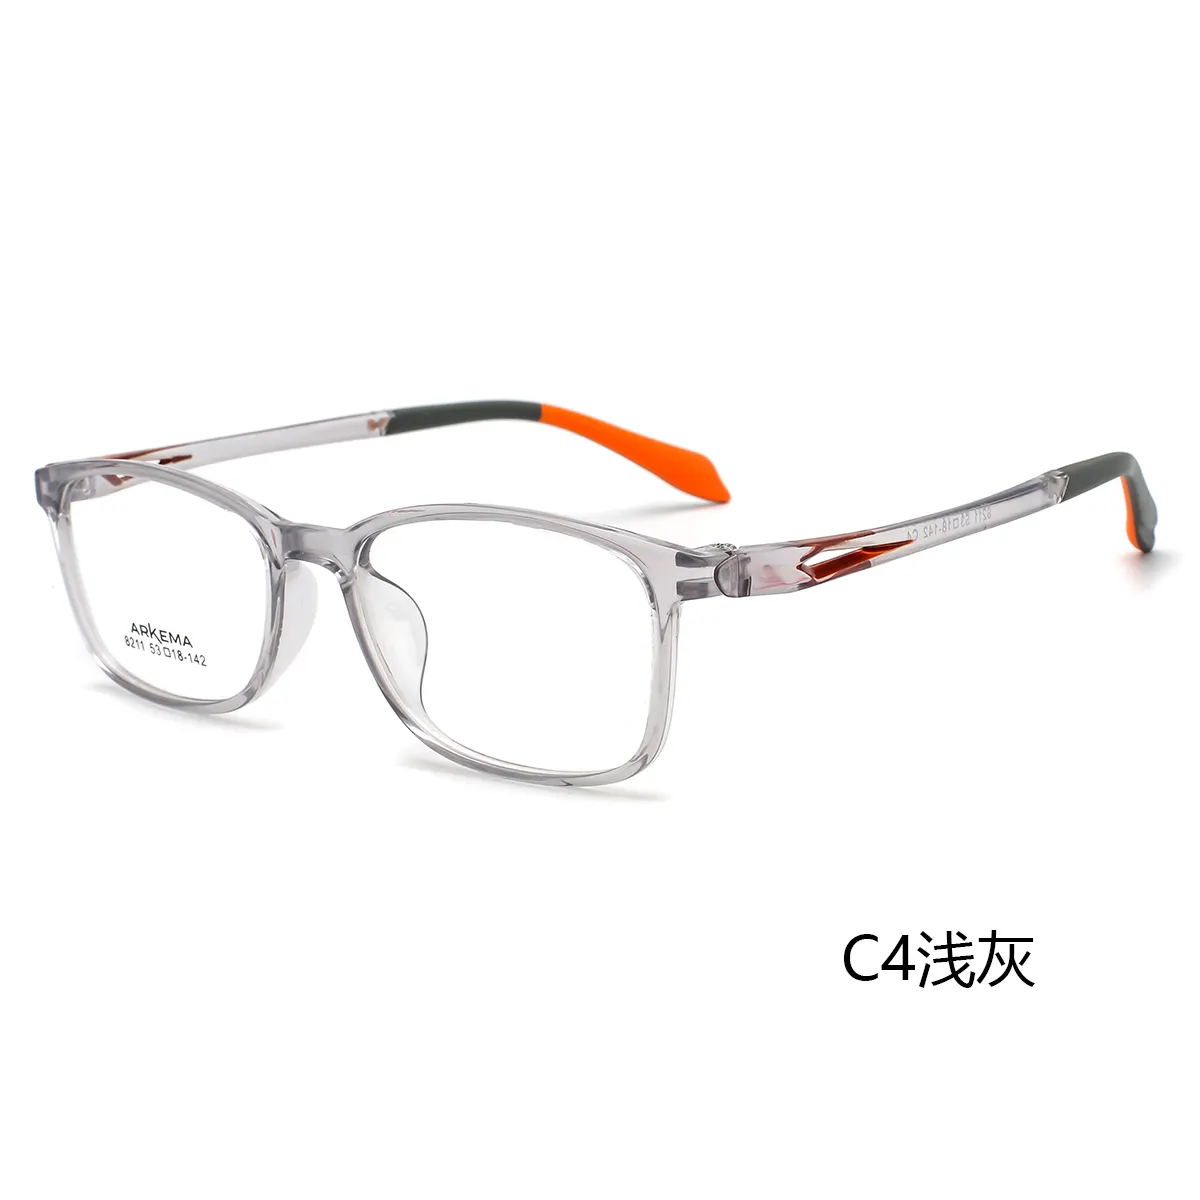 Neue kommende bunte neue Design brillen Brillen Arkema elastische optische Brillen fassungen quadratische Brillen fassungen für Unisex